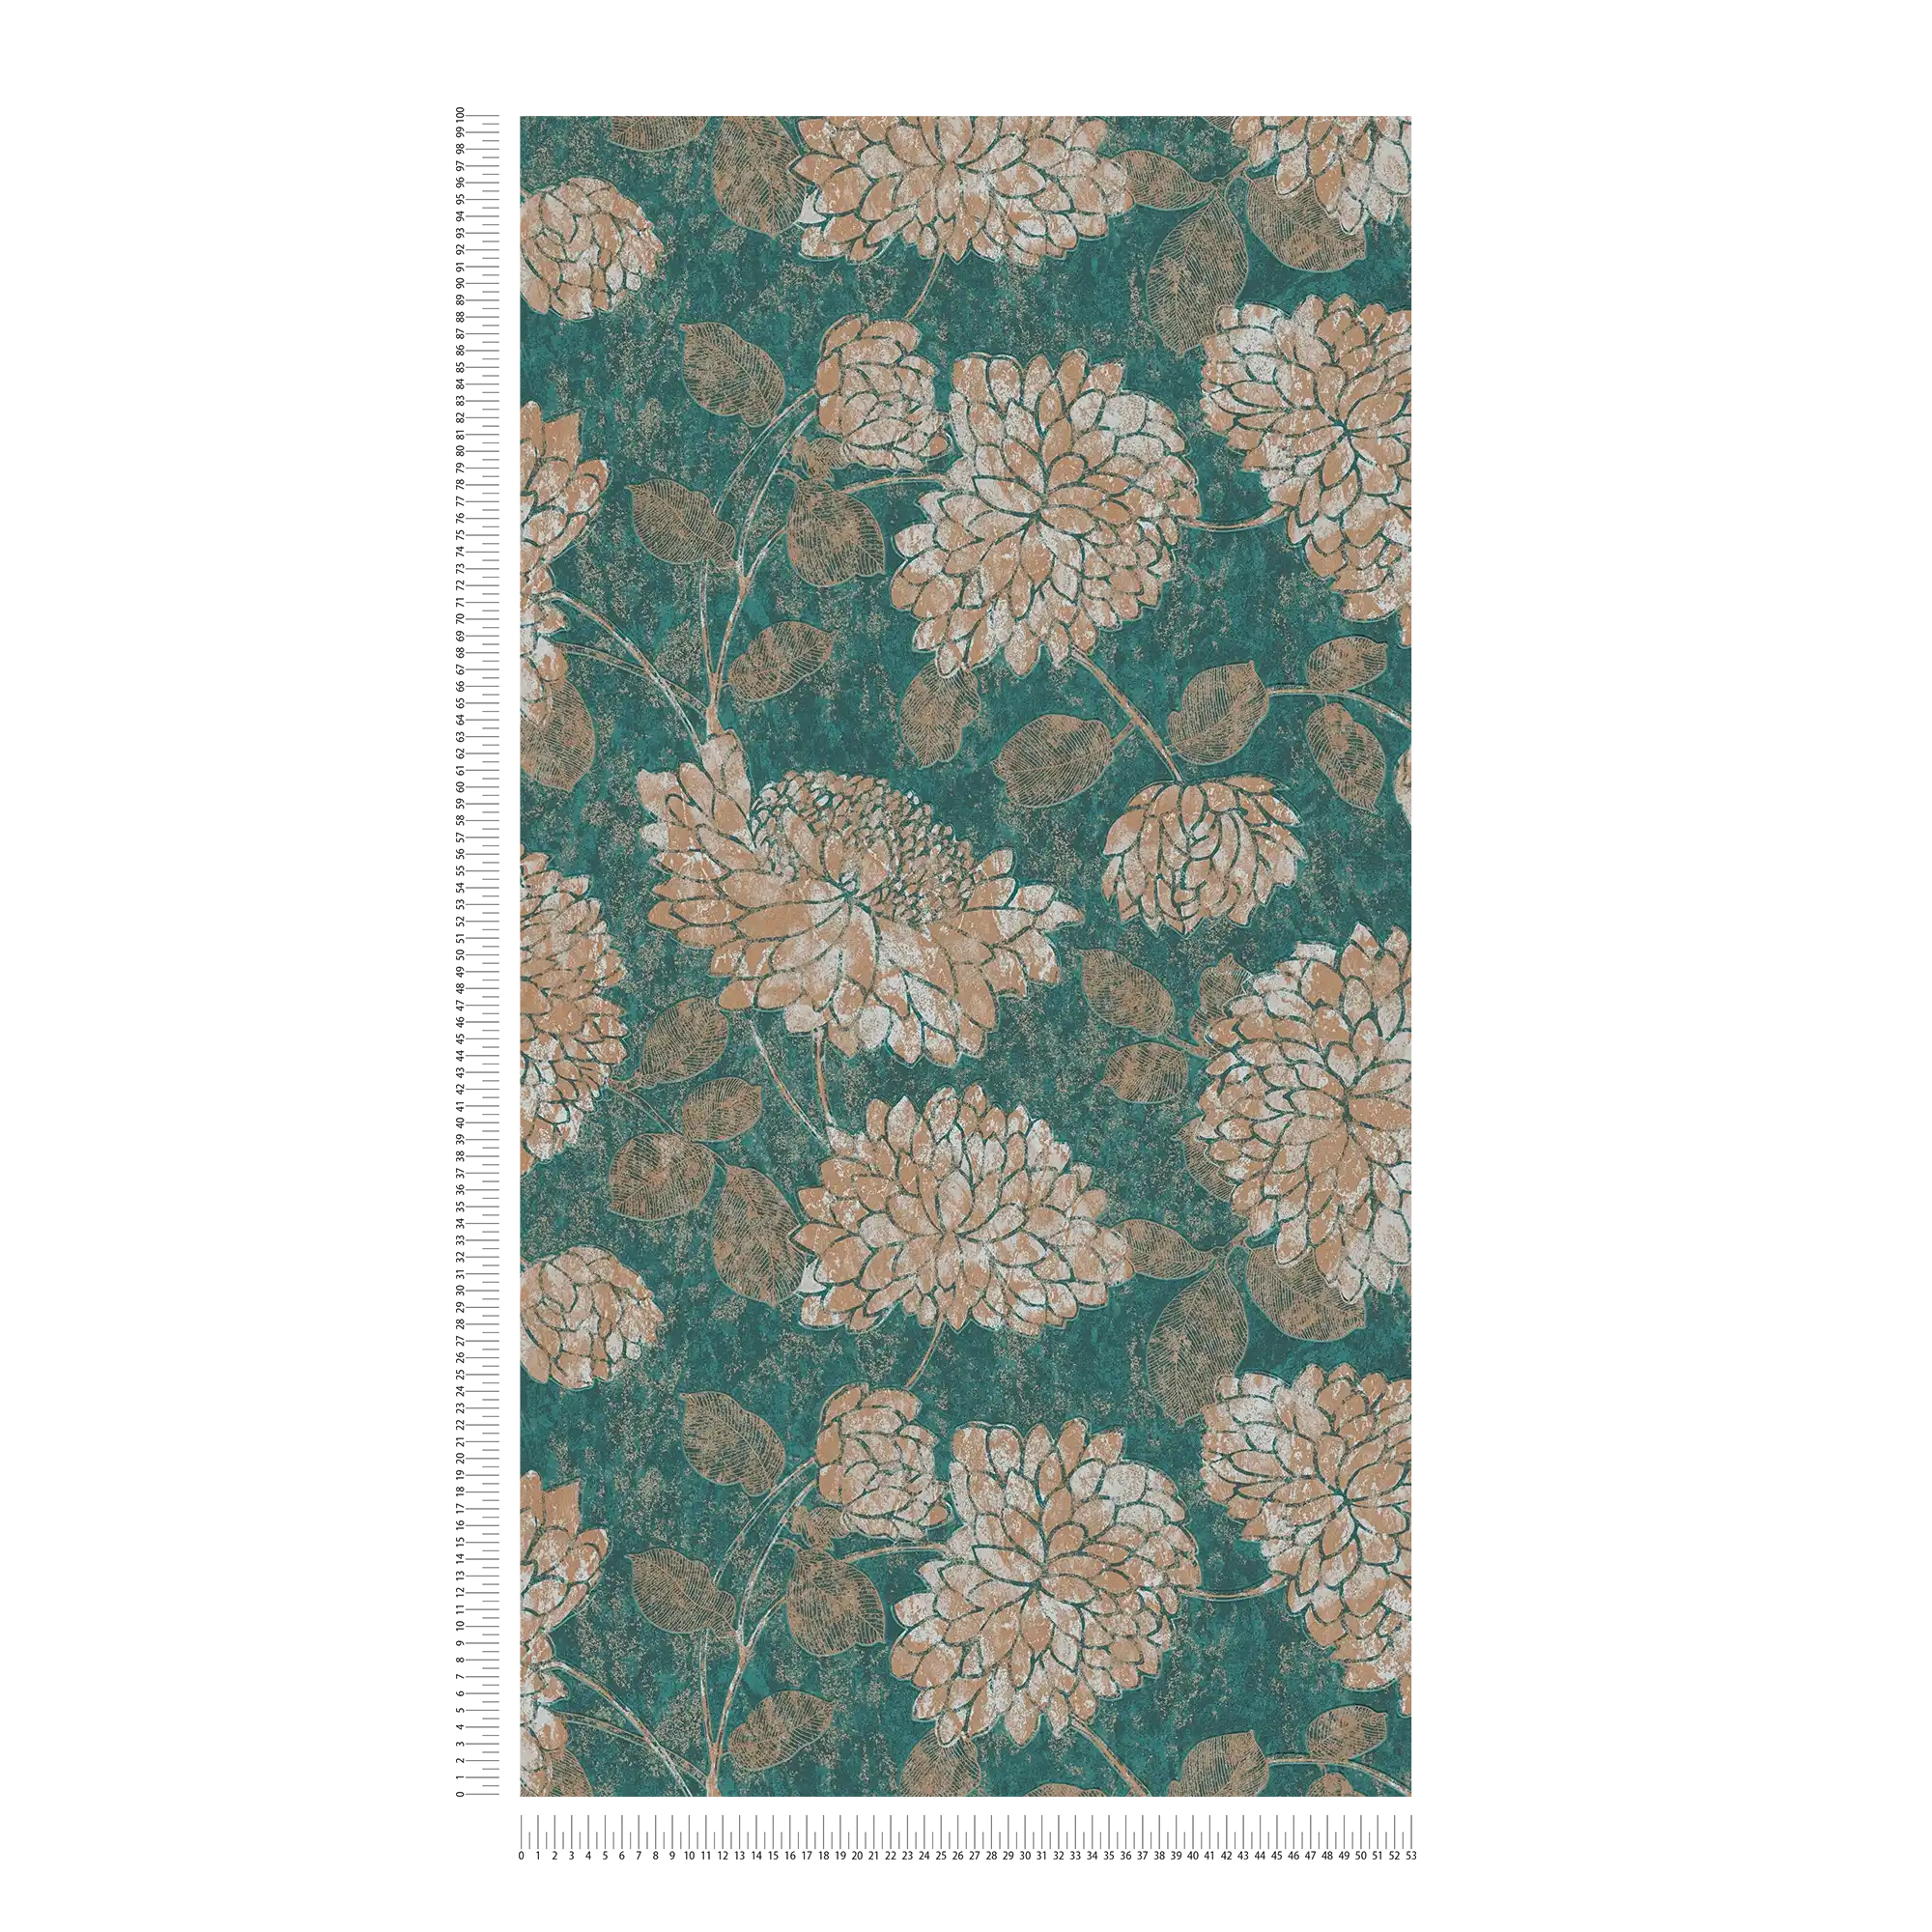             Florale Tapete mit Blumenmuster leicht glänzend – Grün, Gold
        